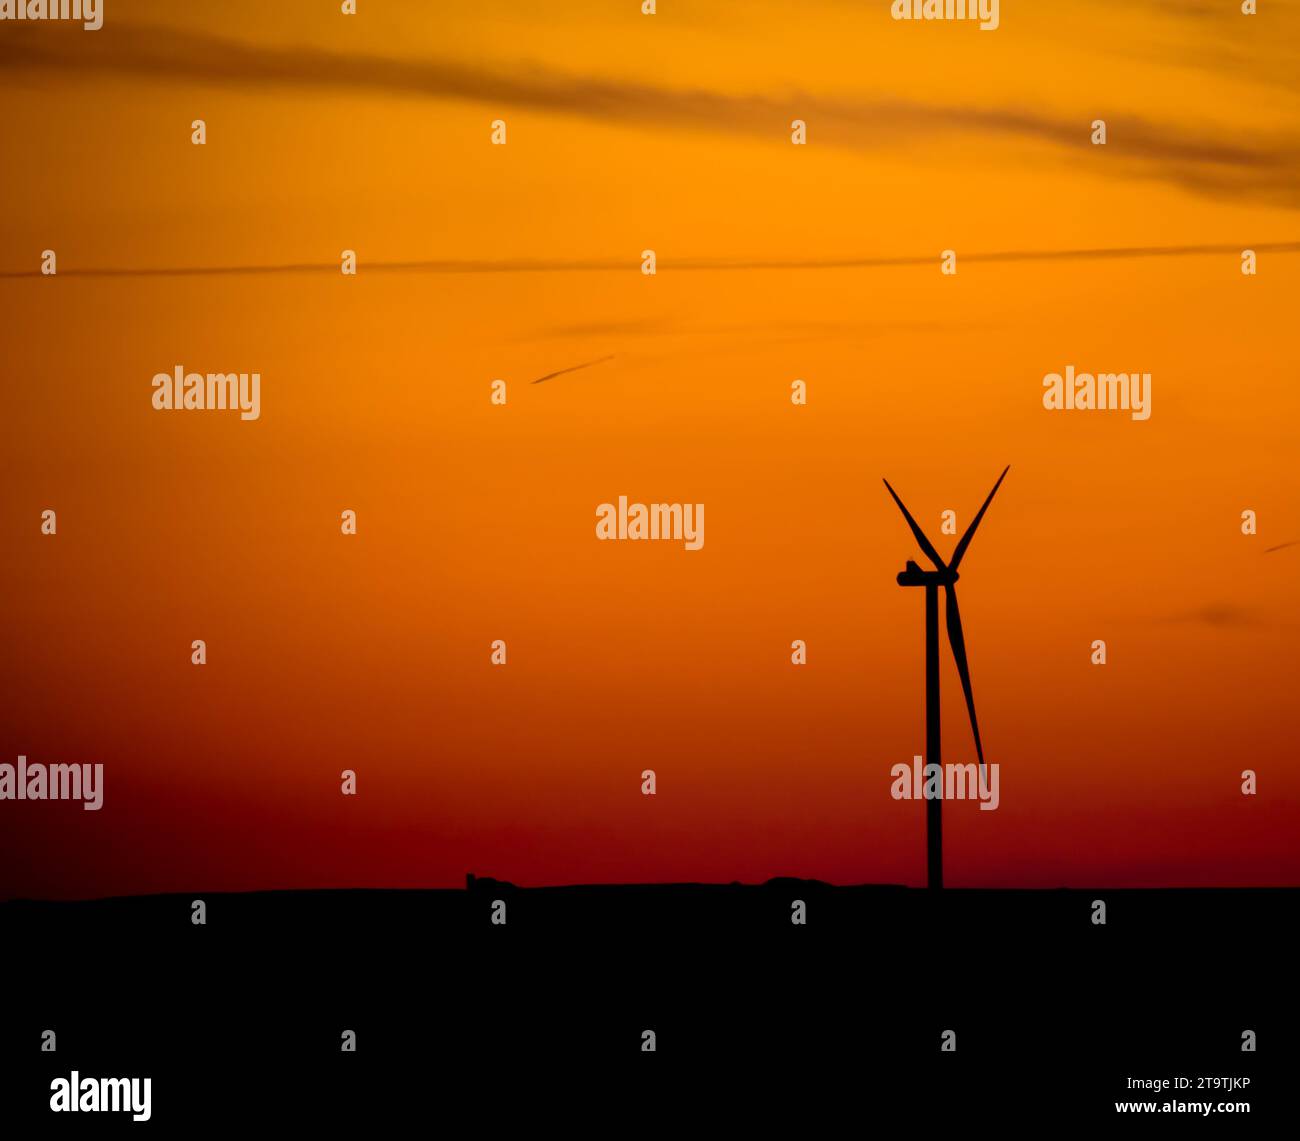 silhouette de l'éolienne au coucher du soleil, concept de puissance et d'énergie ; silhouette de l'éolienne au coucher du soleil, concept de puissance et d'énergie Banque D'Images